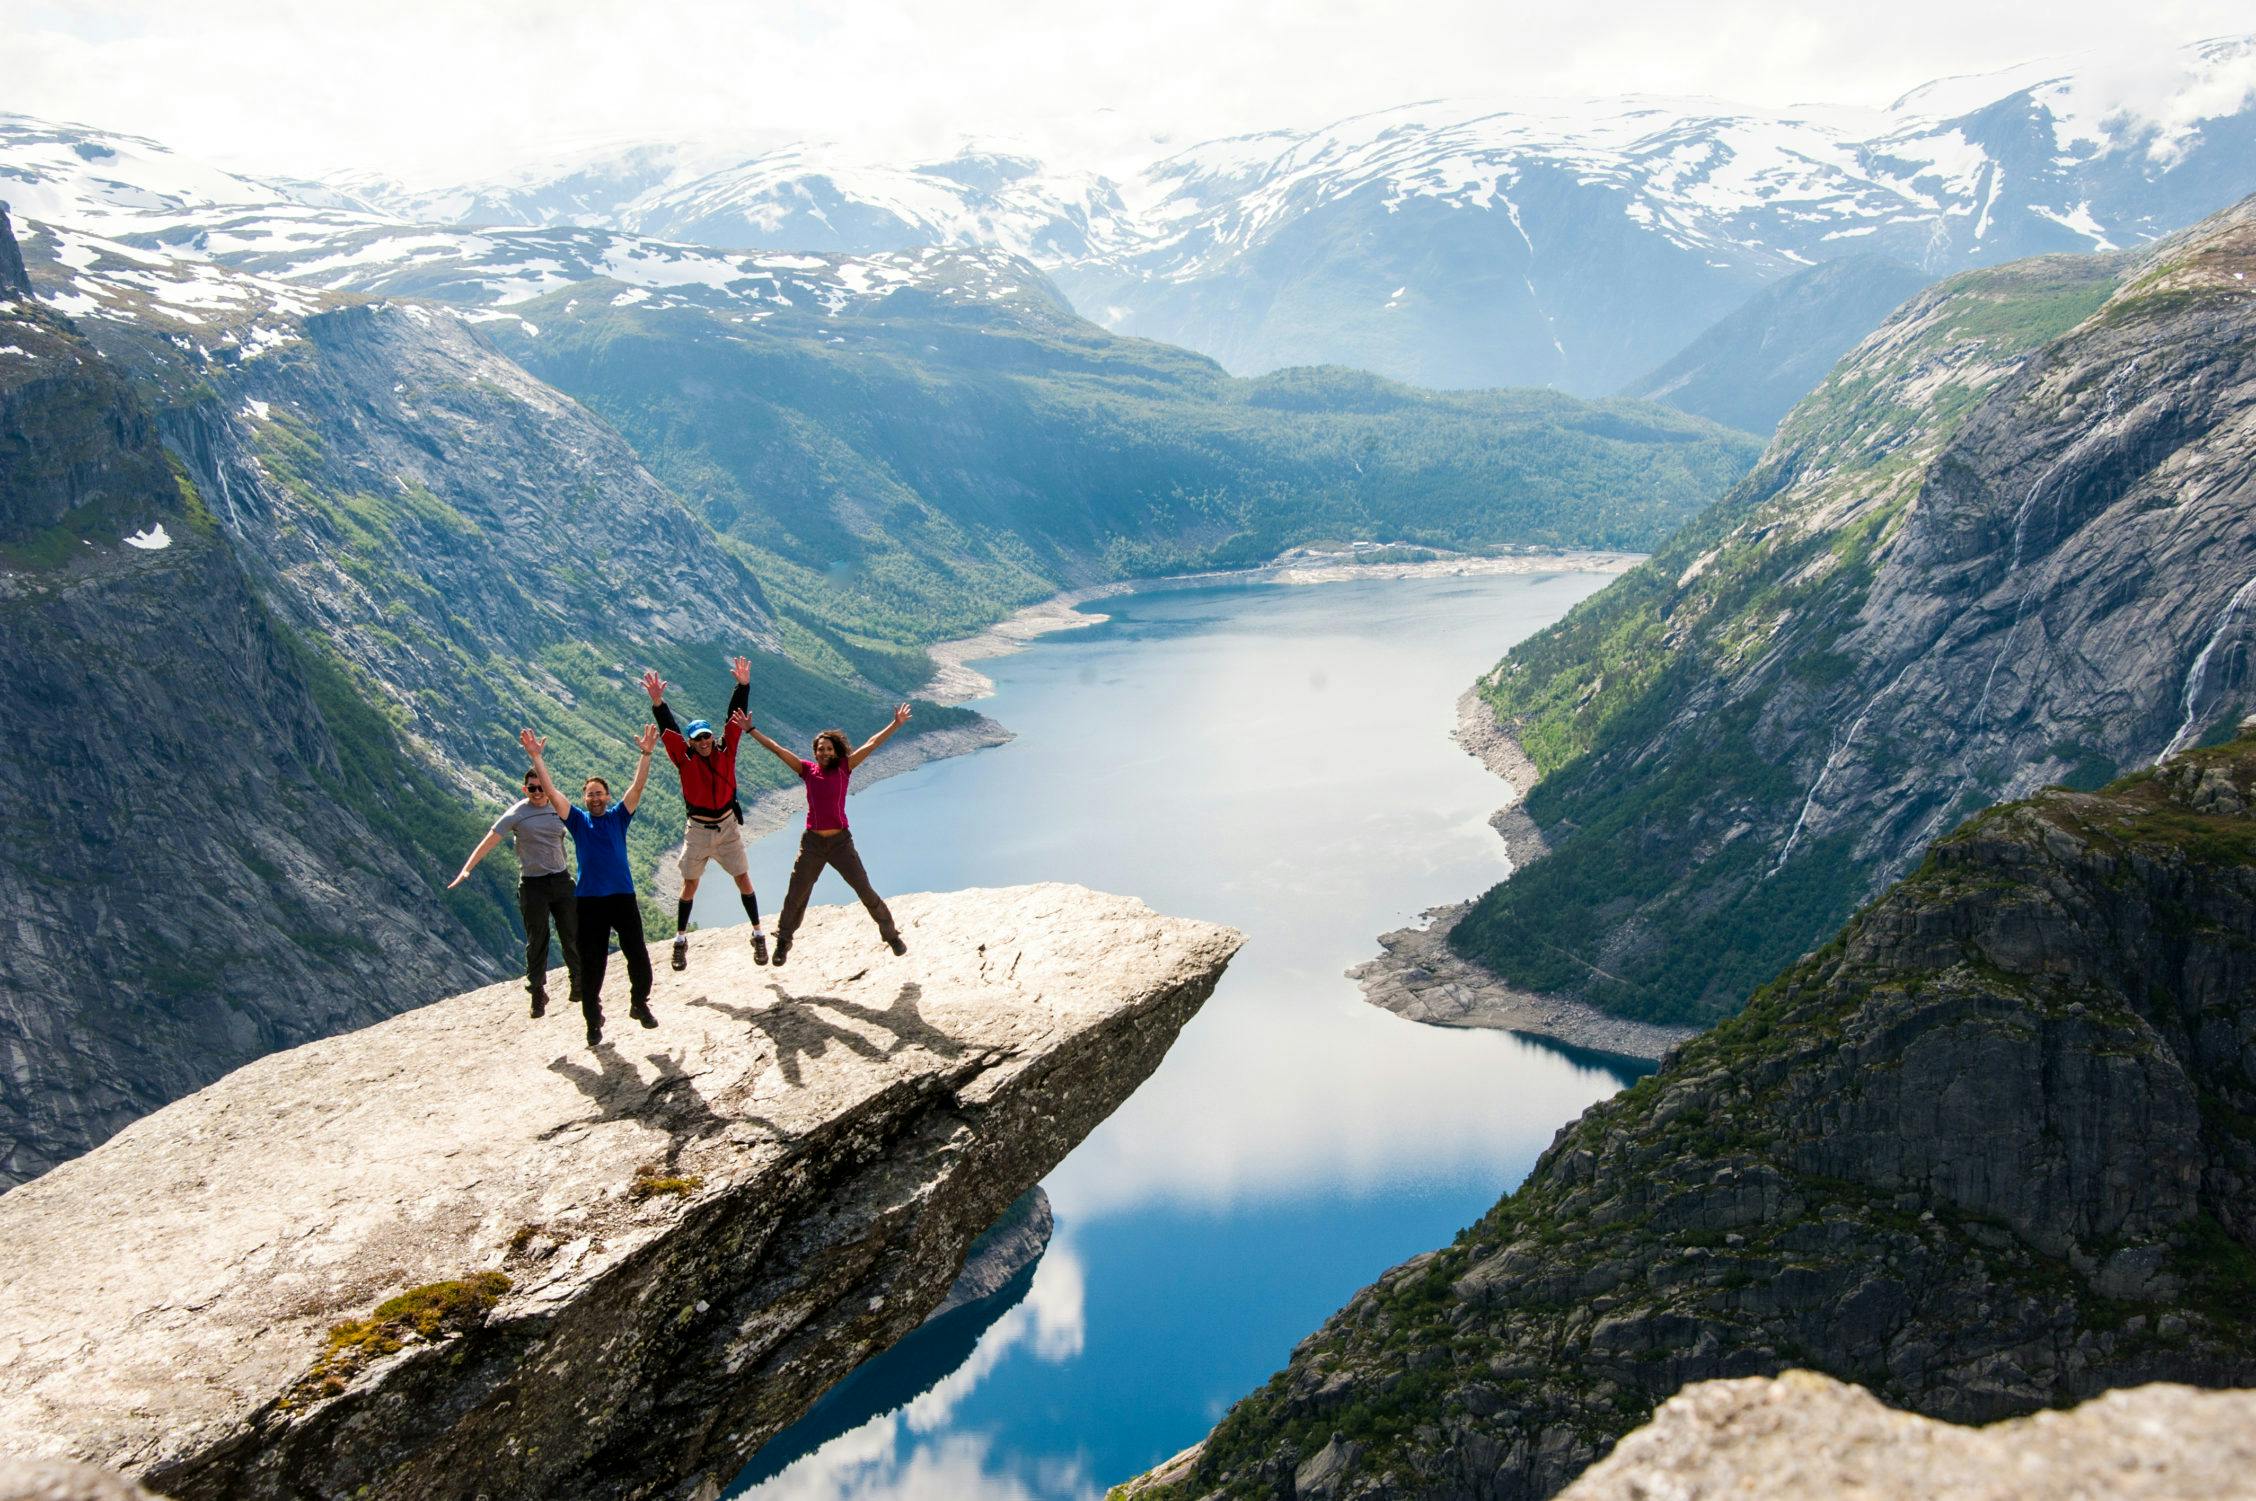 Hike the Norwegian Icons: Trolltunga, Preikestolen and Kjerag